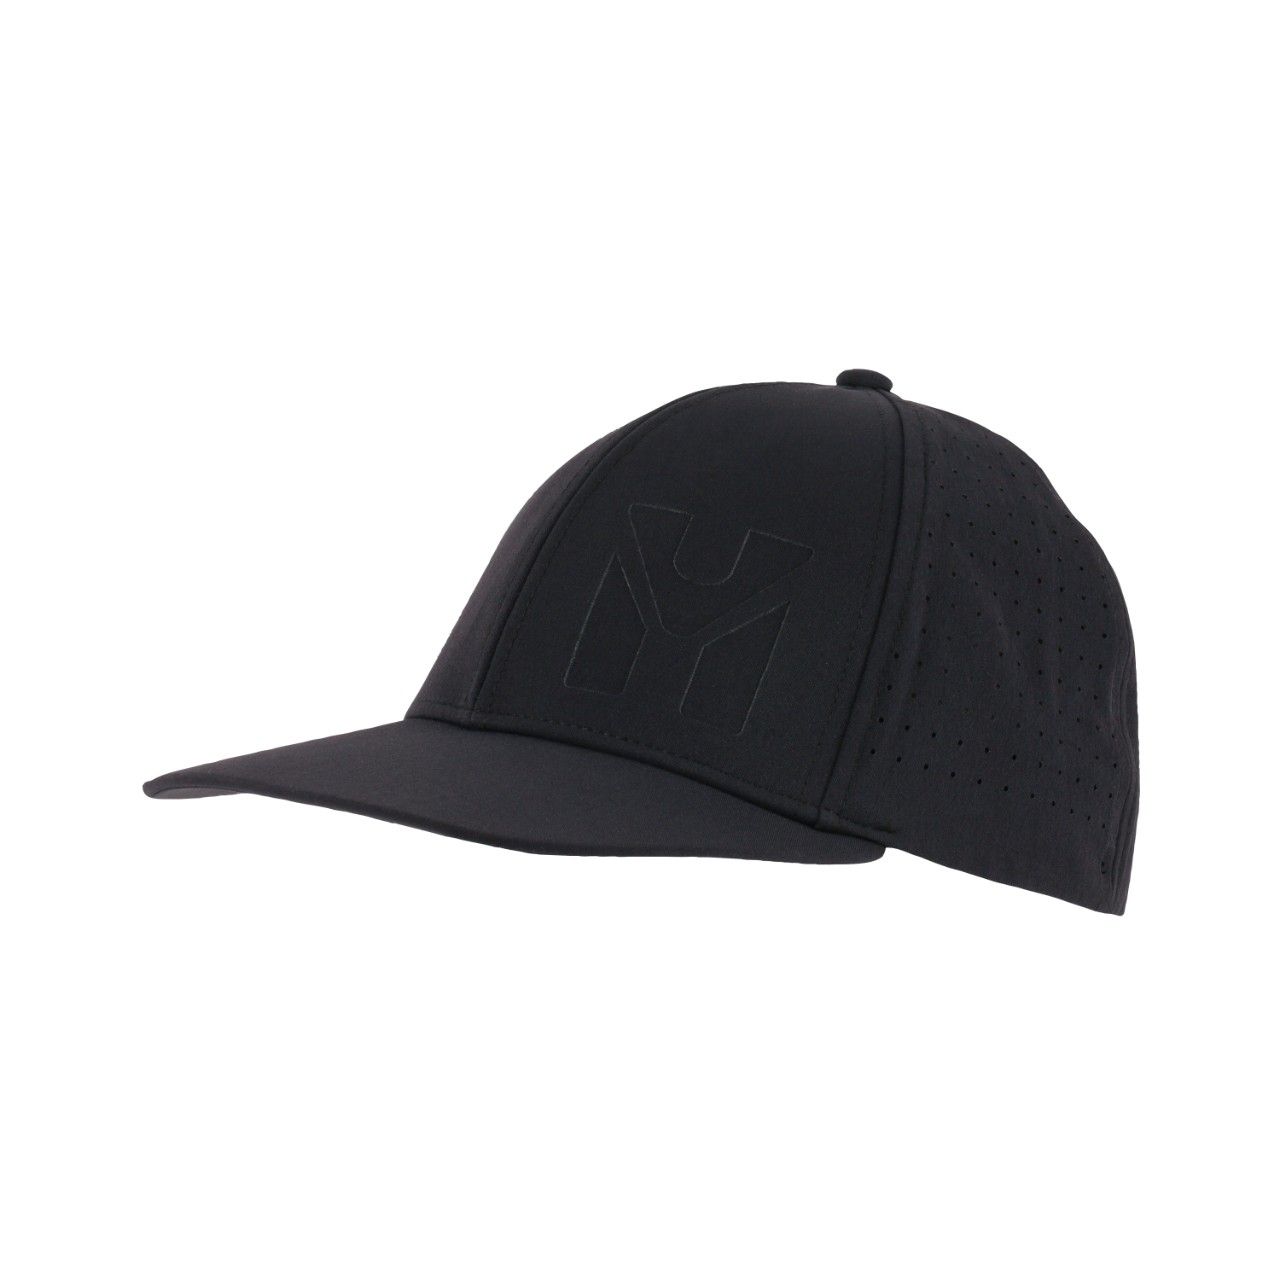 Casquette trilogy signature cap black